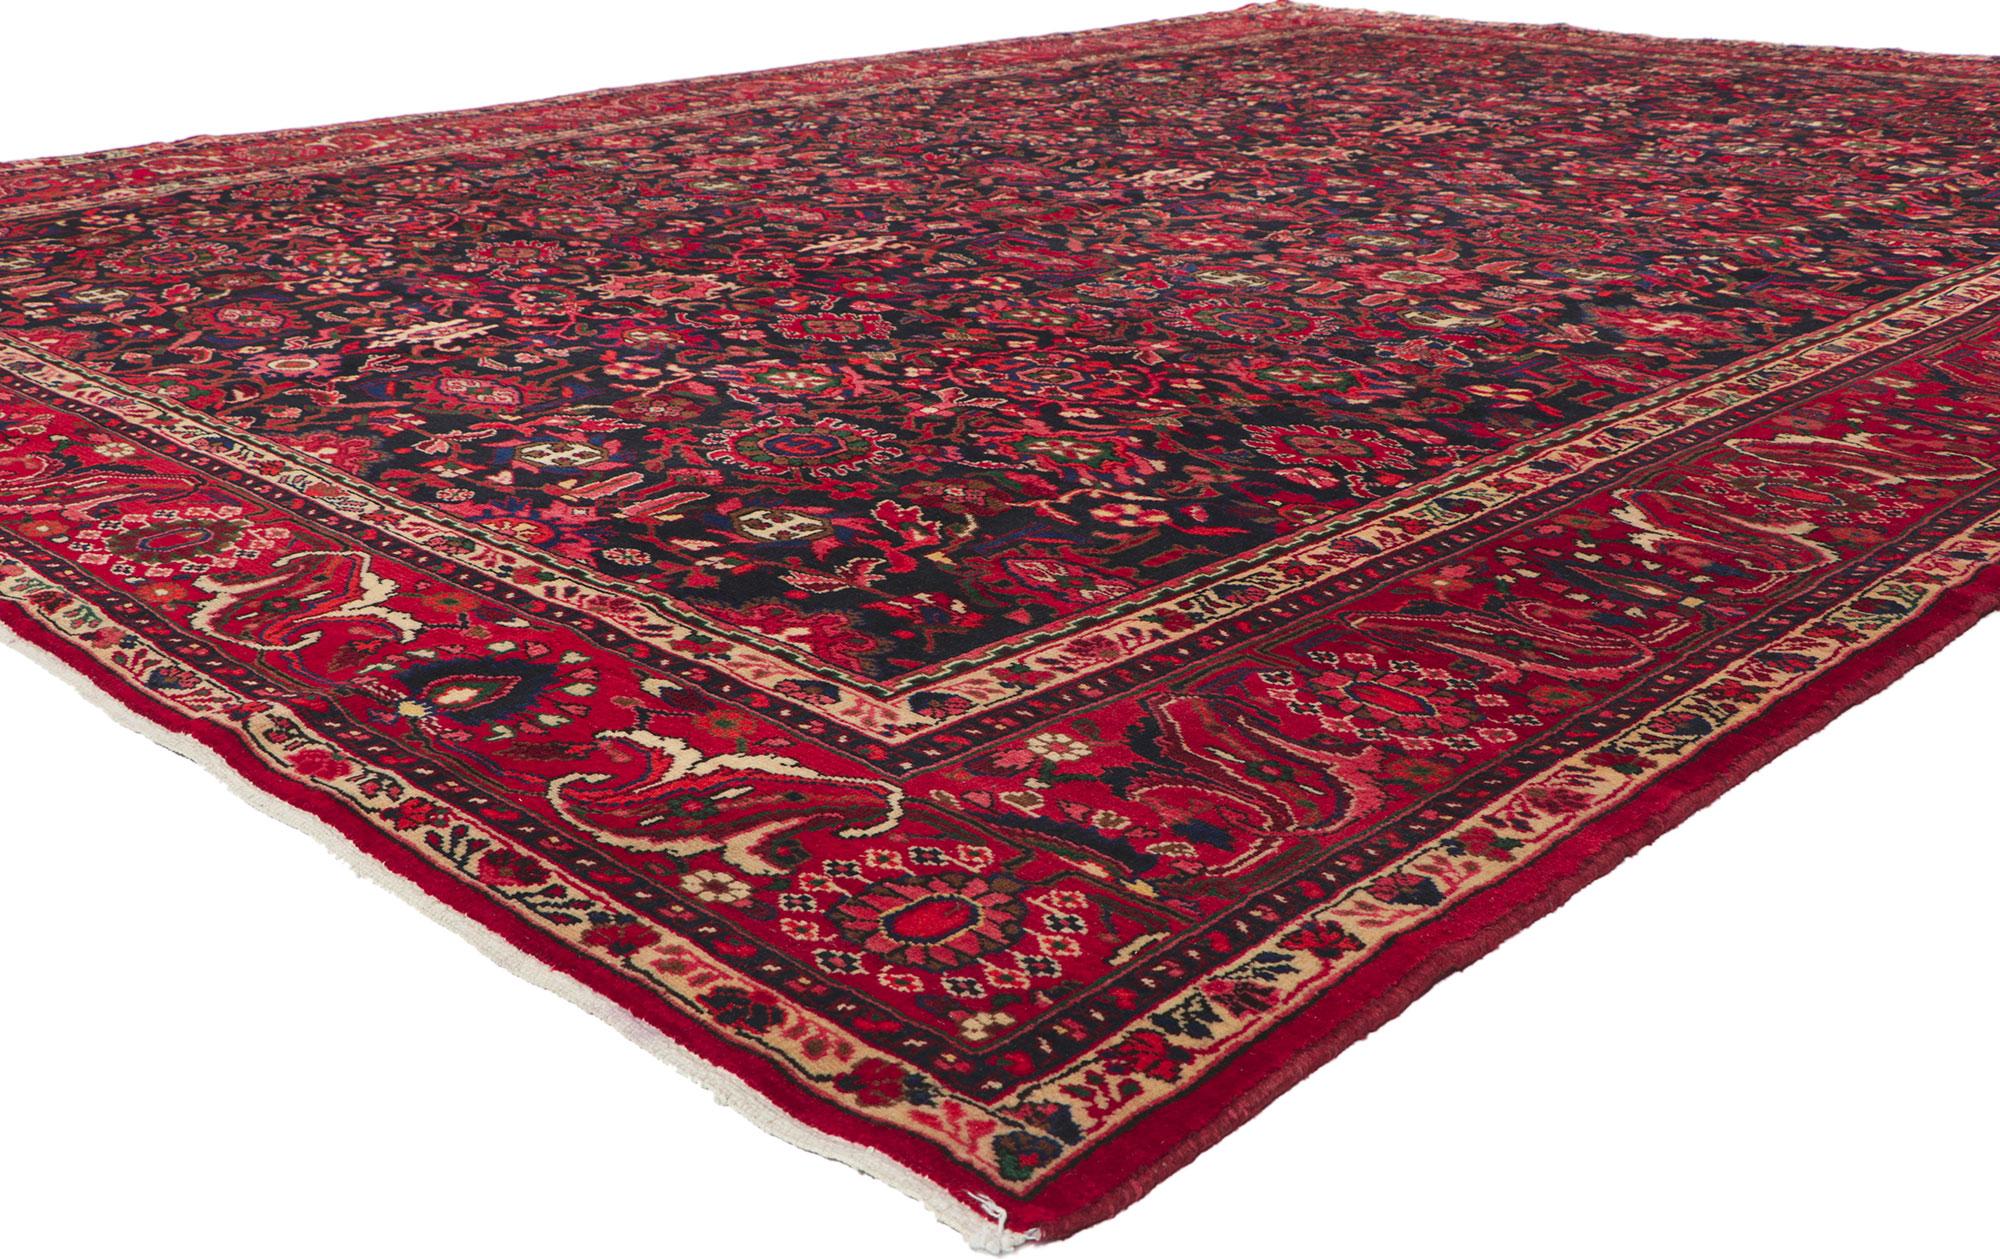 61203 Vintage Persisch Malayer Teppich 10'03 x 13'09. Mit seinem zeitlosen Design und seiner betörenden Schönheit in satten Farben ist dieser handgeknüpfte antike persische Malayer-Teppich aus Wolle ein echter Hingucker. Ein sich allover